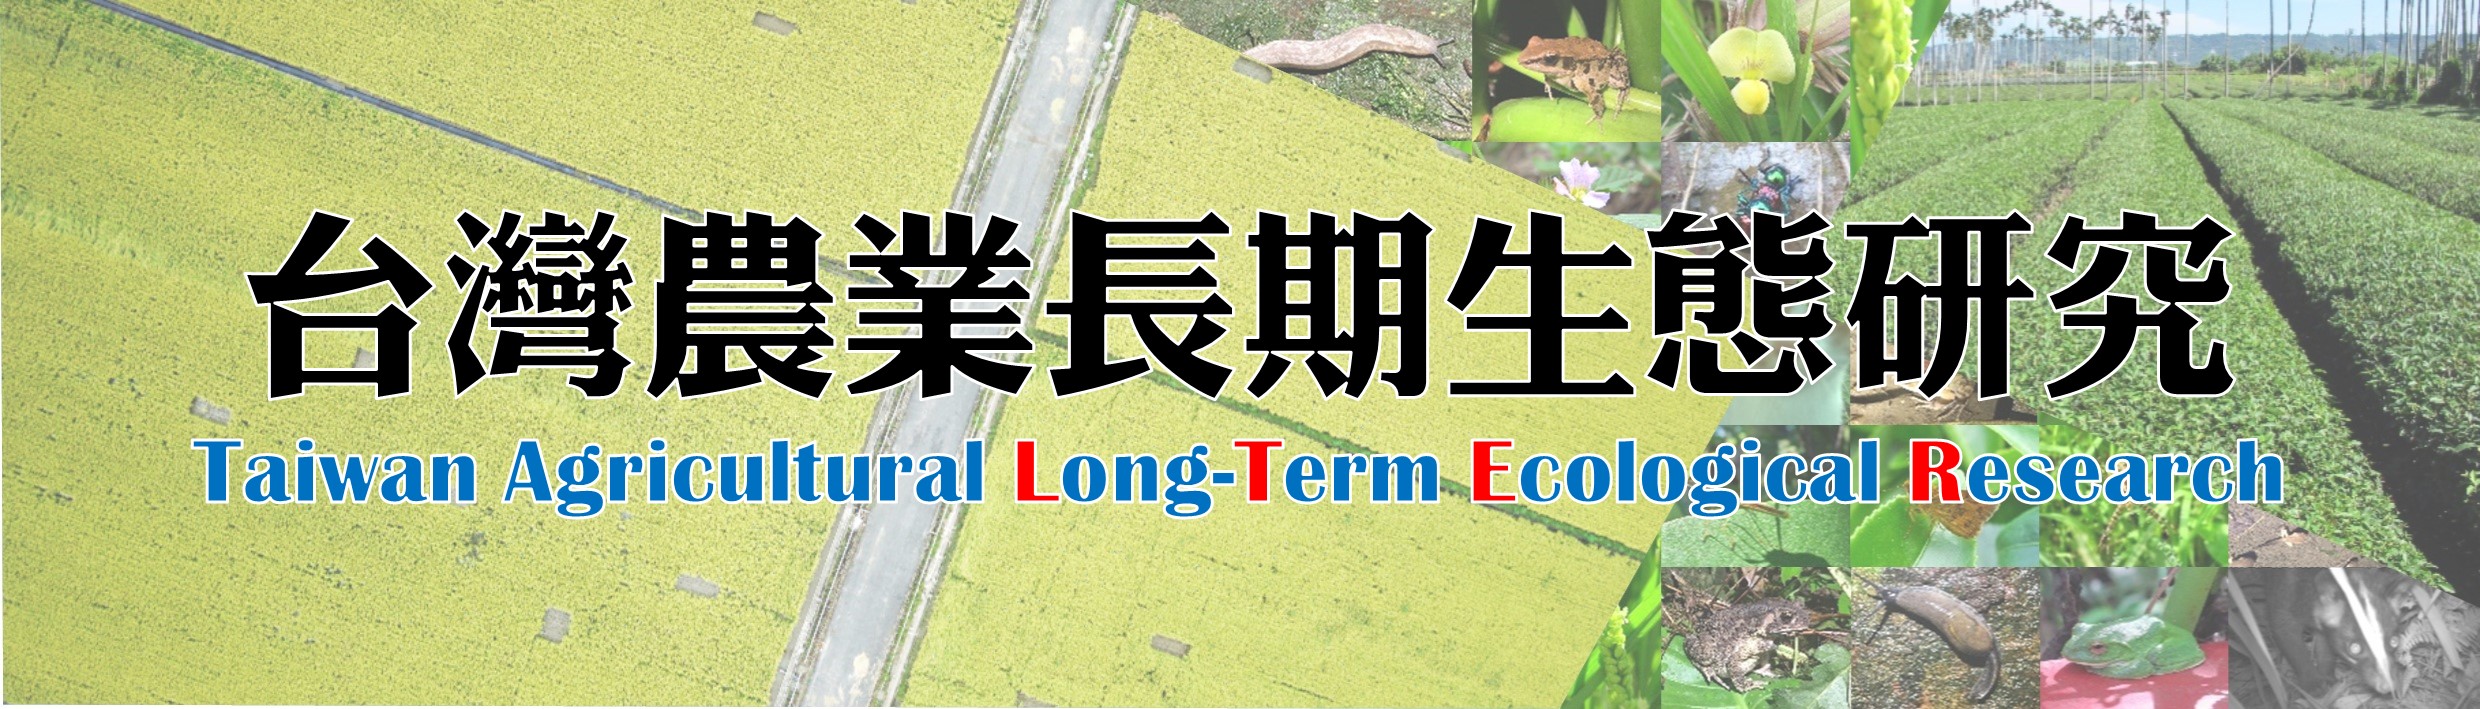 台灣農業長期生態研究(另開新視窗)